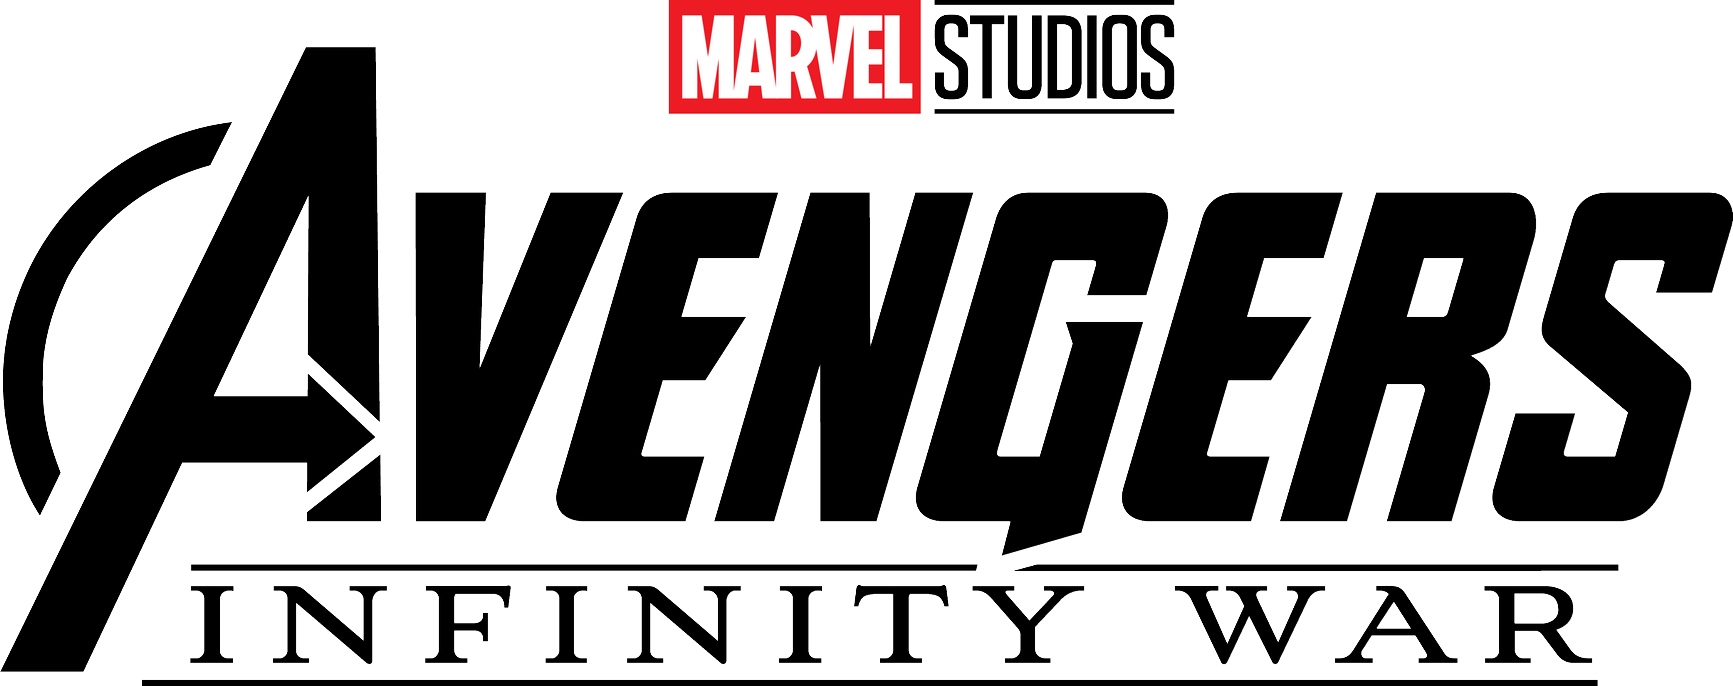 Logo Infinity Avengers Photos War PNG Image